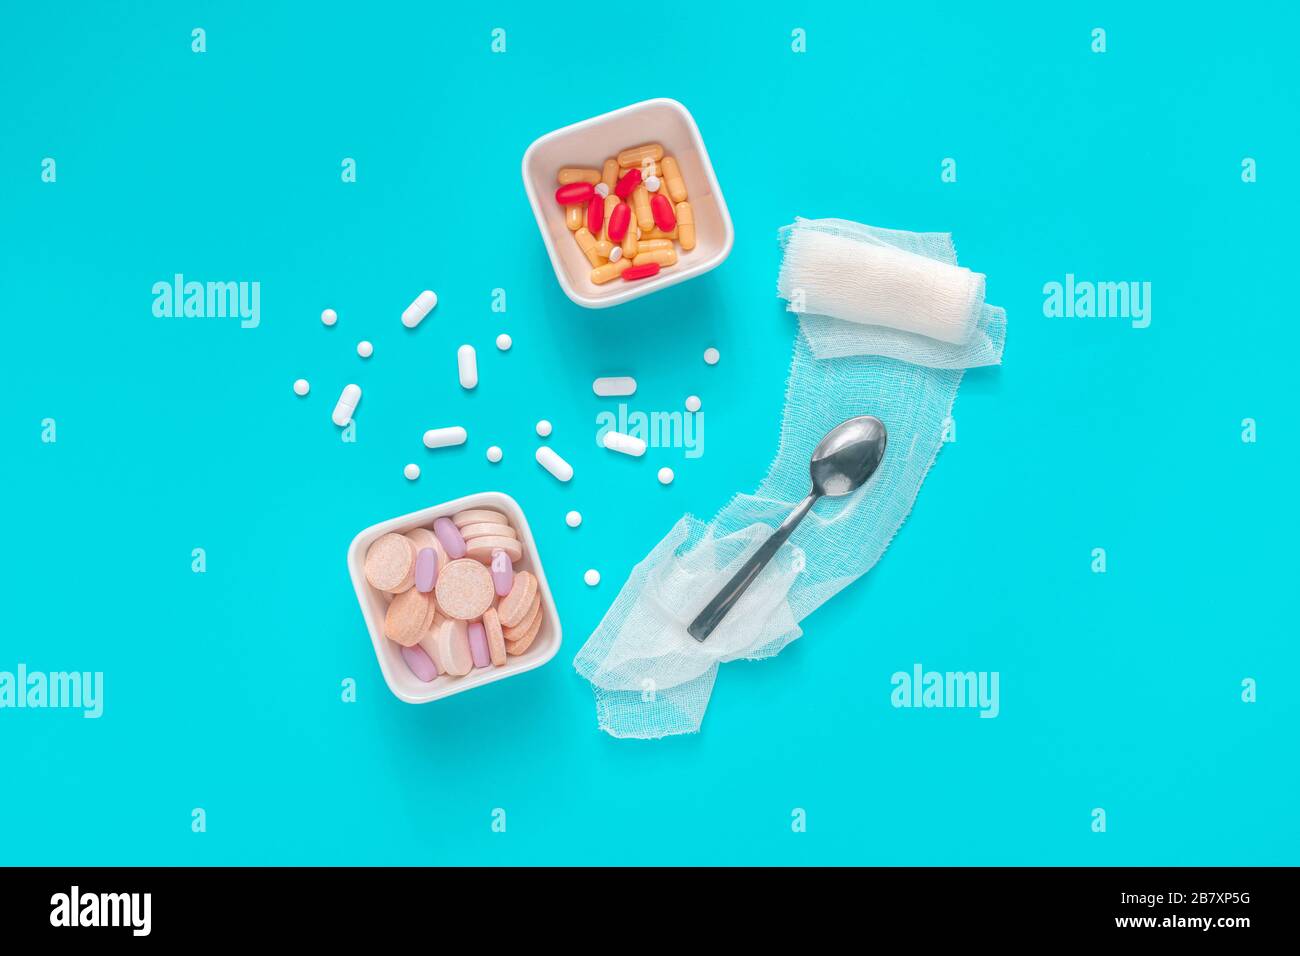 Pillen- und Drogenmissbrauchskonzept Draufsicht flaches Lay mit Medikamenten serviert als Lebensmittel auf blauem Hintergrund Stockfoto